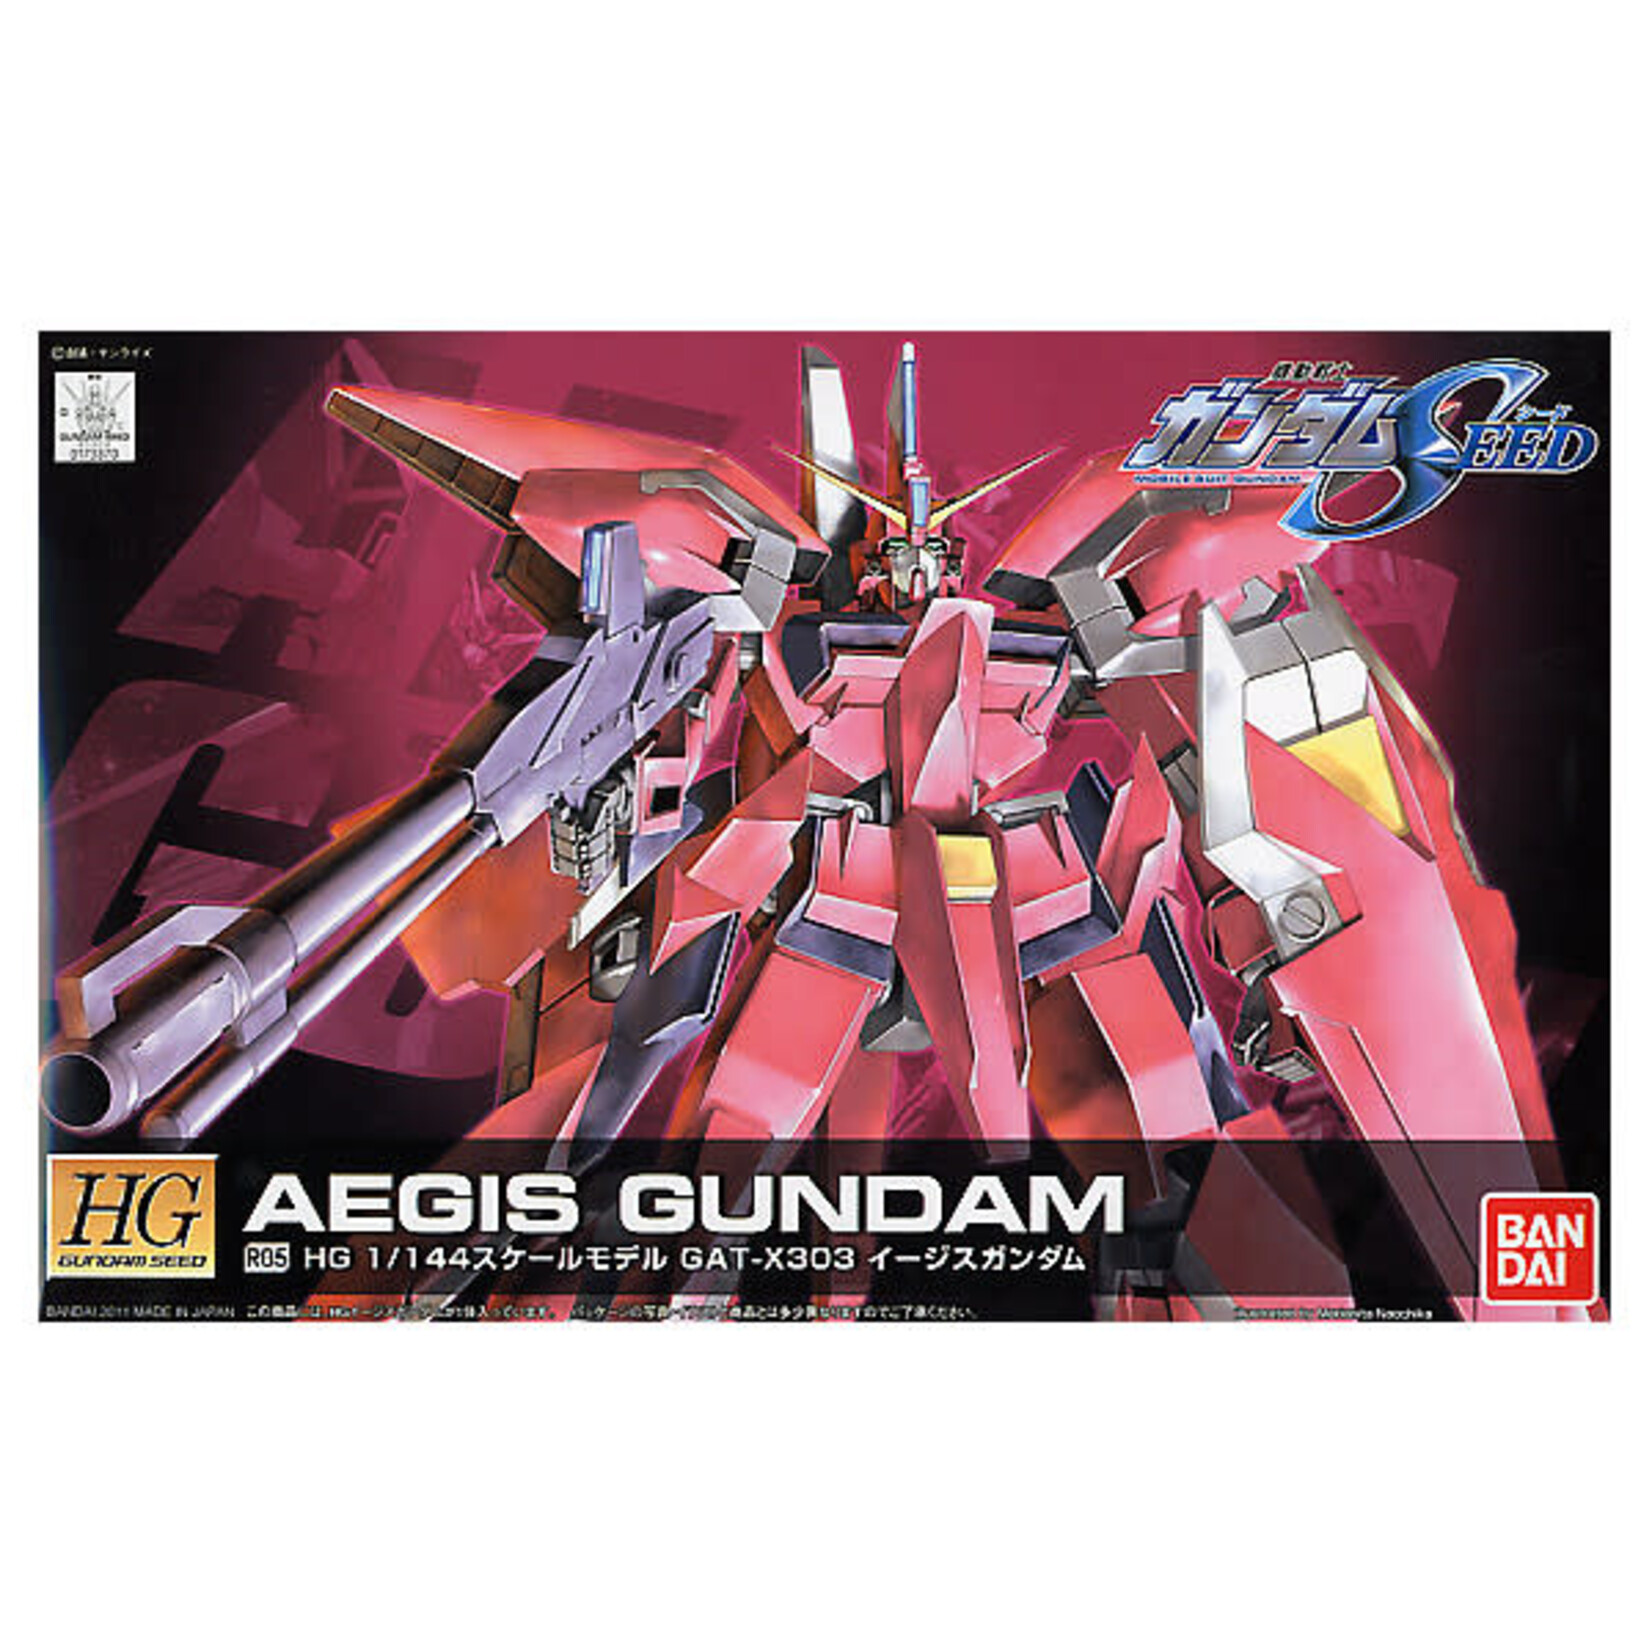 Bandai Bandai 2156316 HG R05 Aegis Gundam "Gundam SEED"